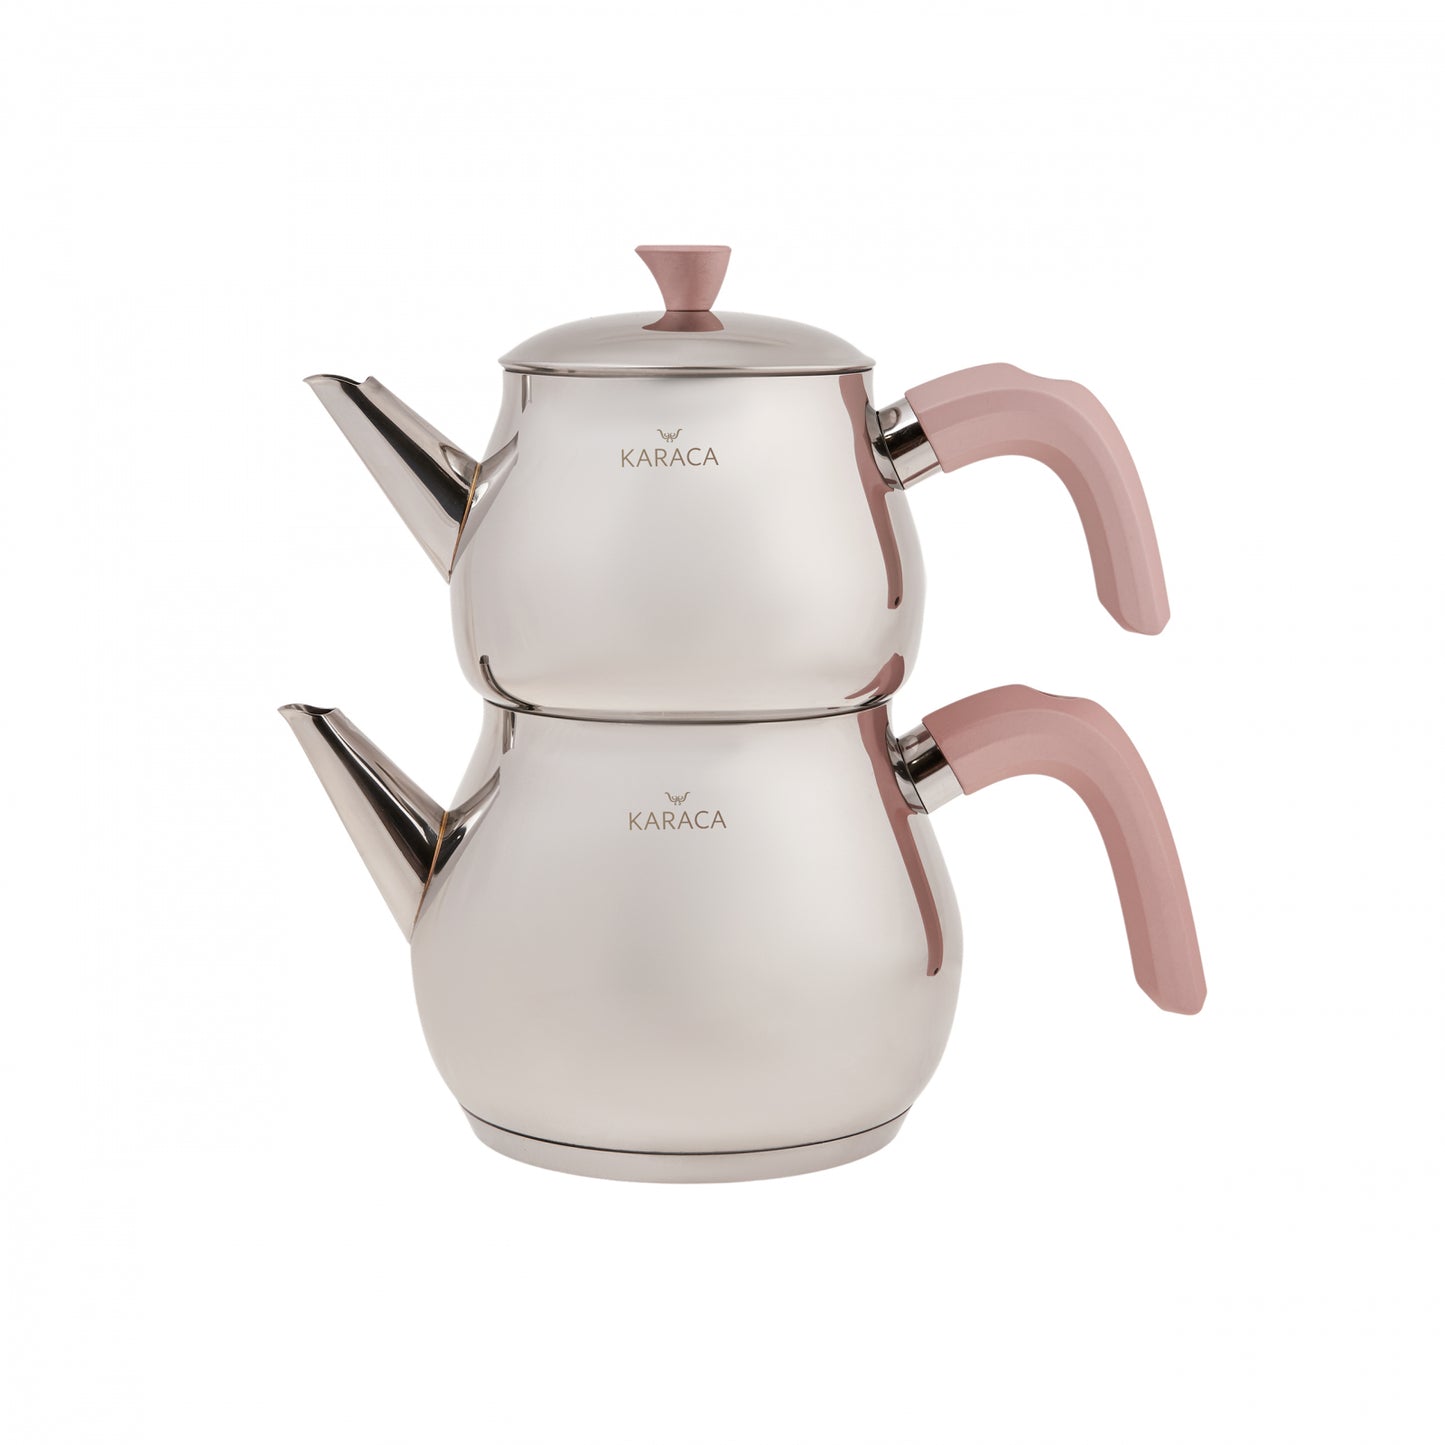 Karaca Kayra Rose Teapot Set